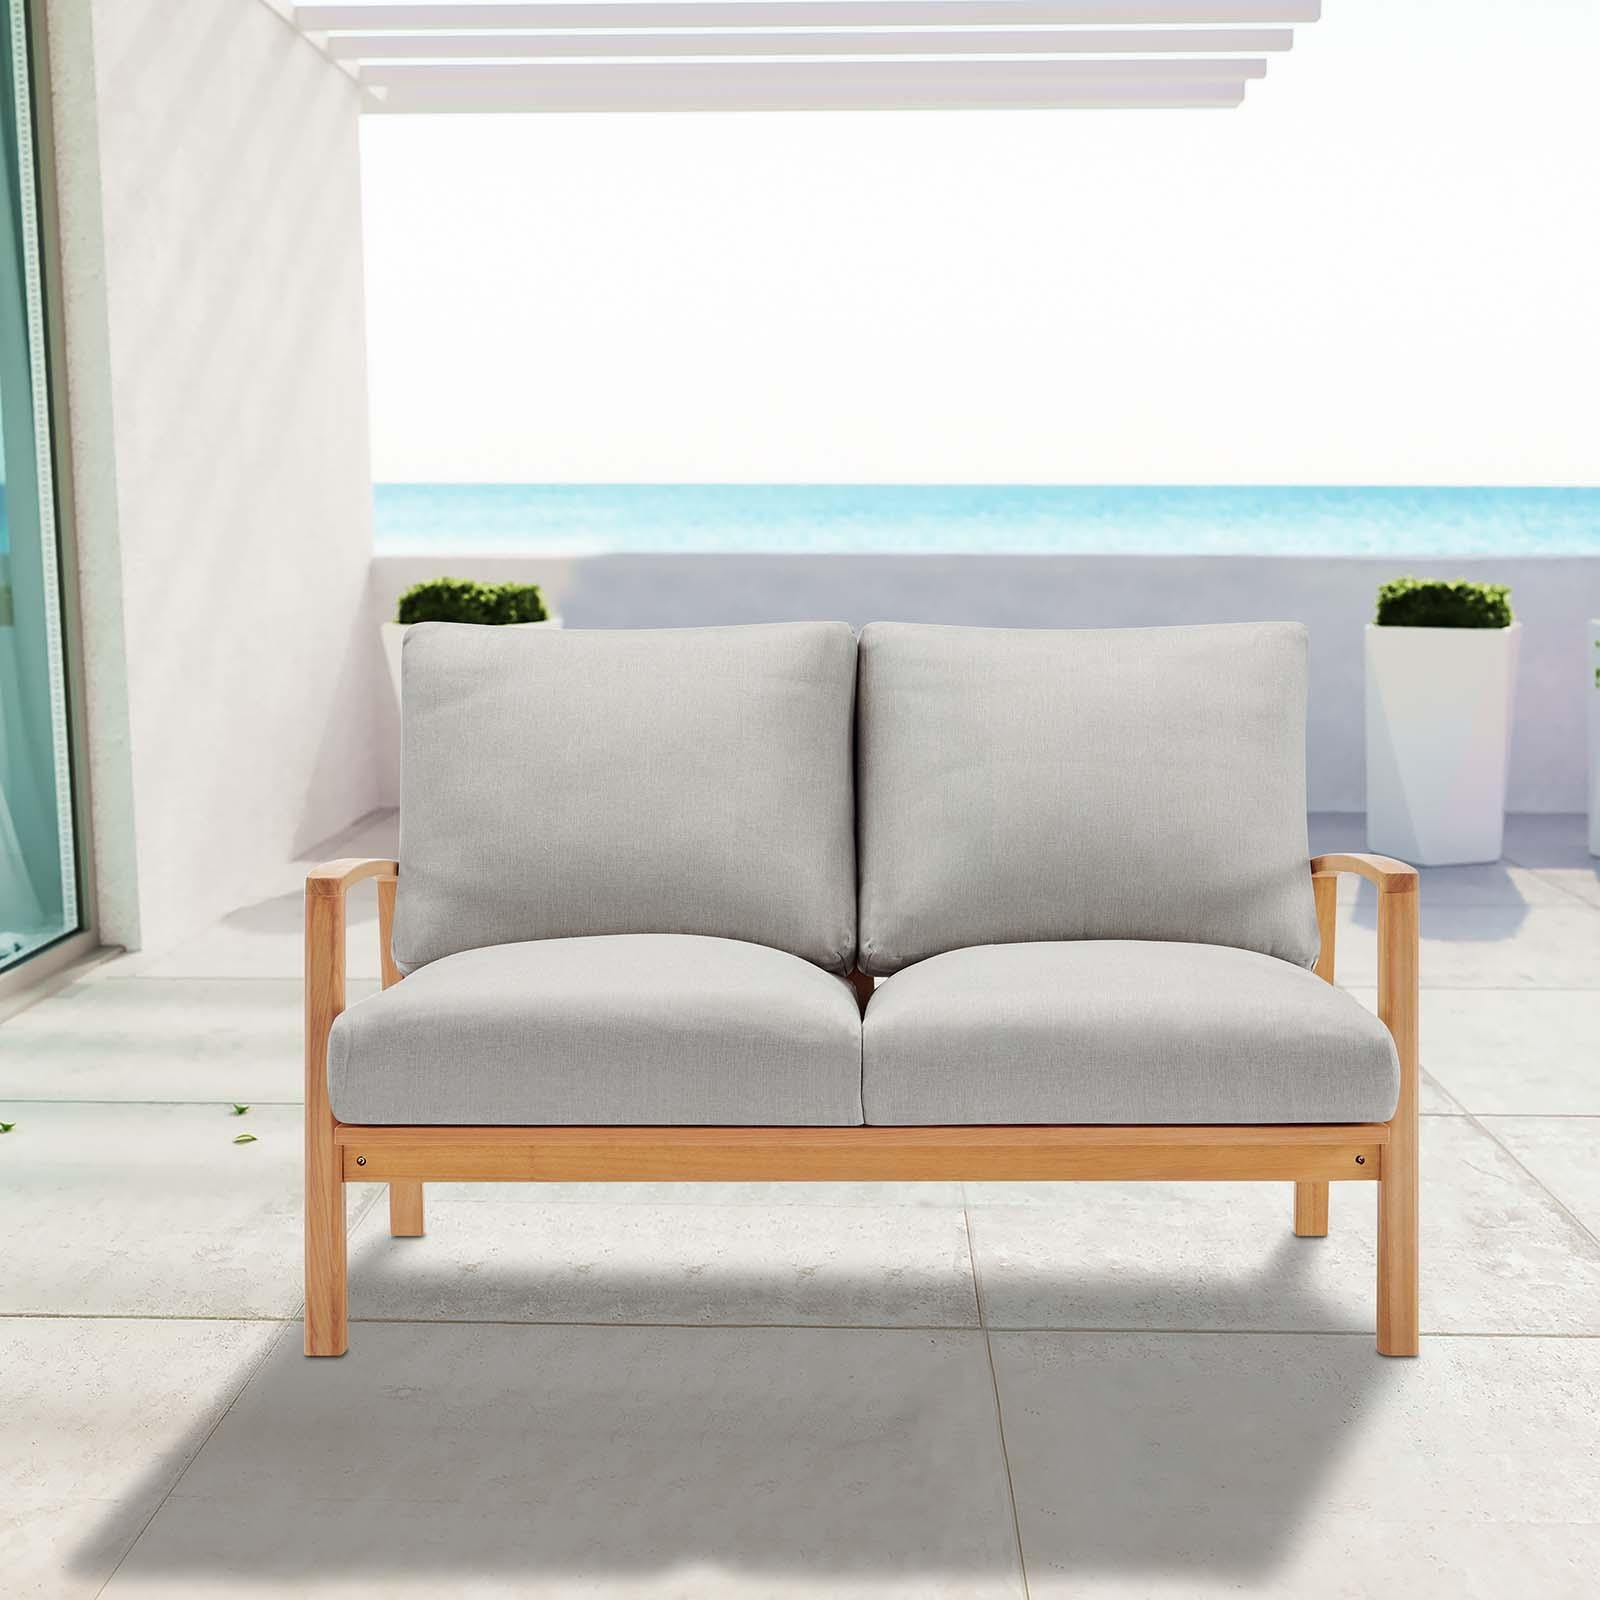 Modway Furniture Modern Orlean Outdoor Patio Eucalyptus Wood Loveseat - EEI-3697